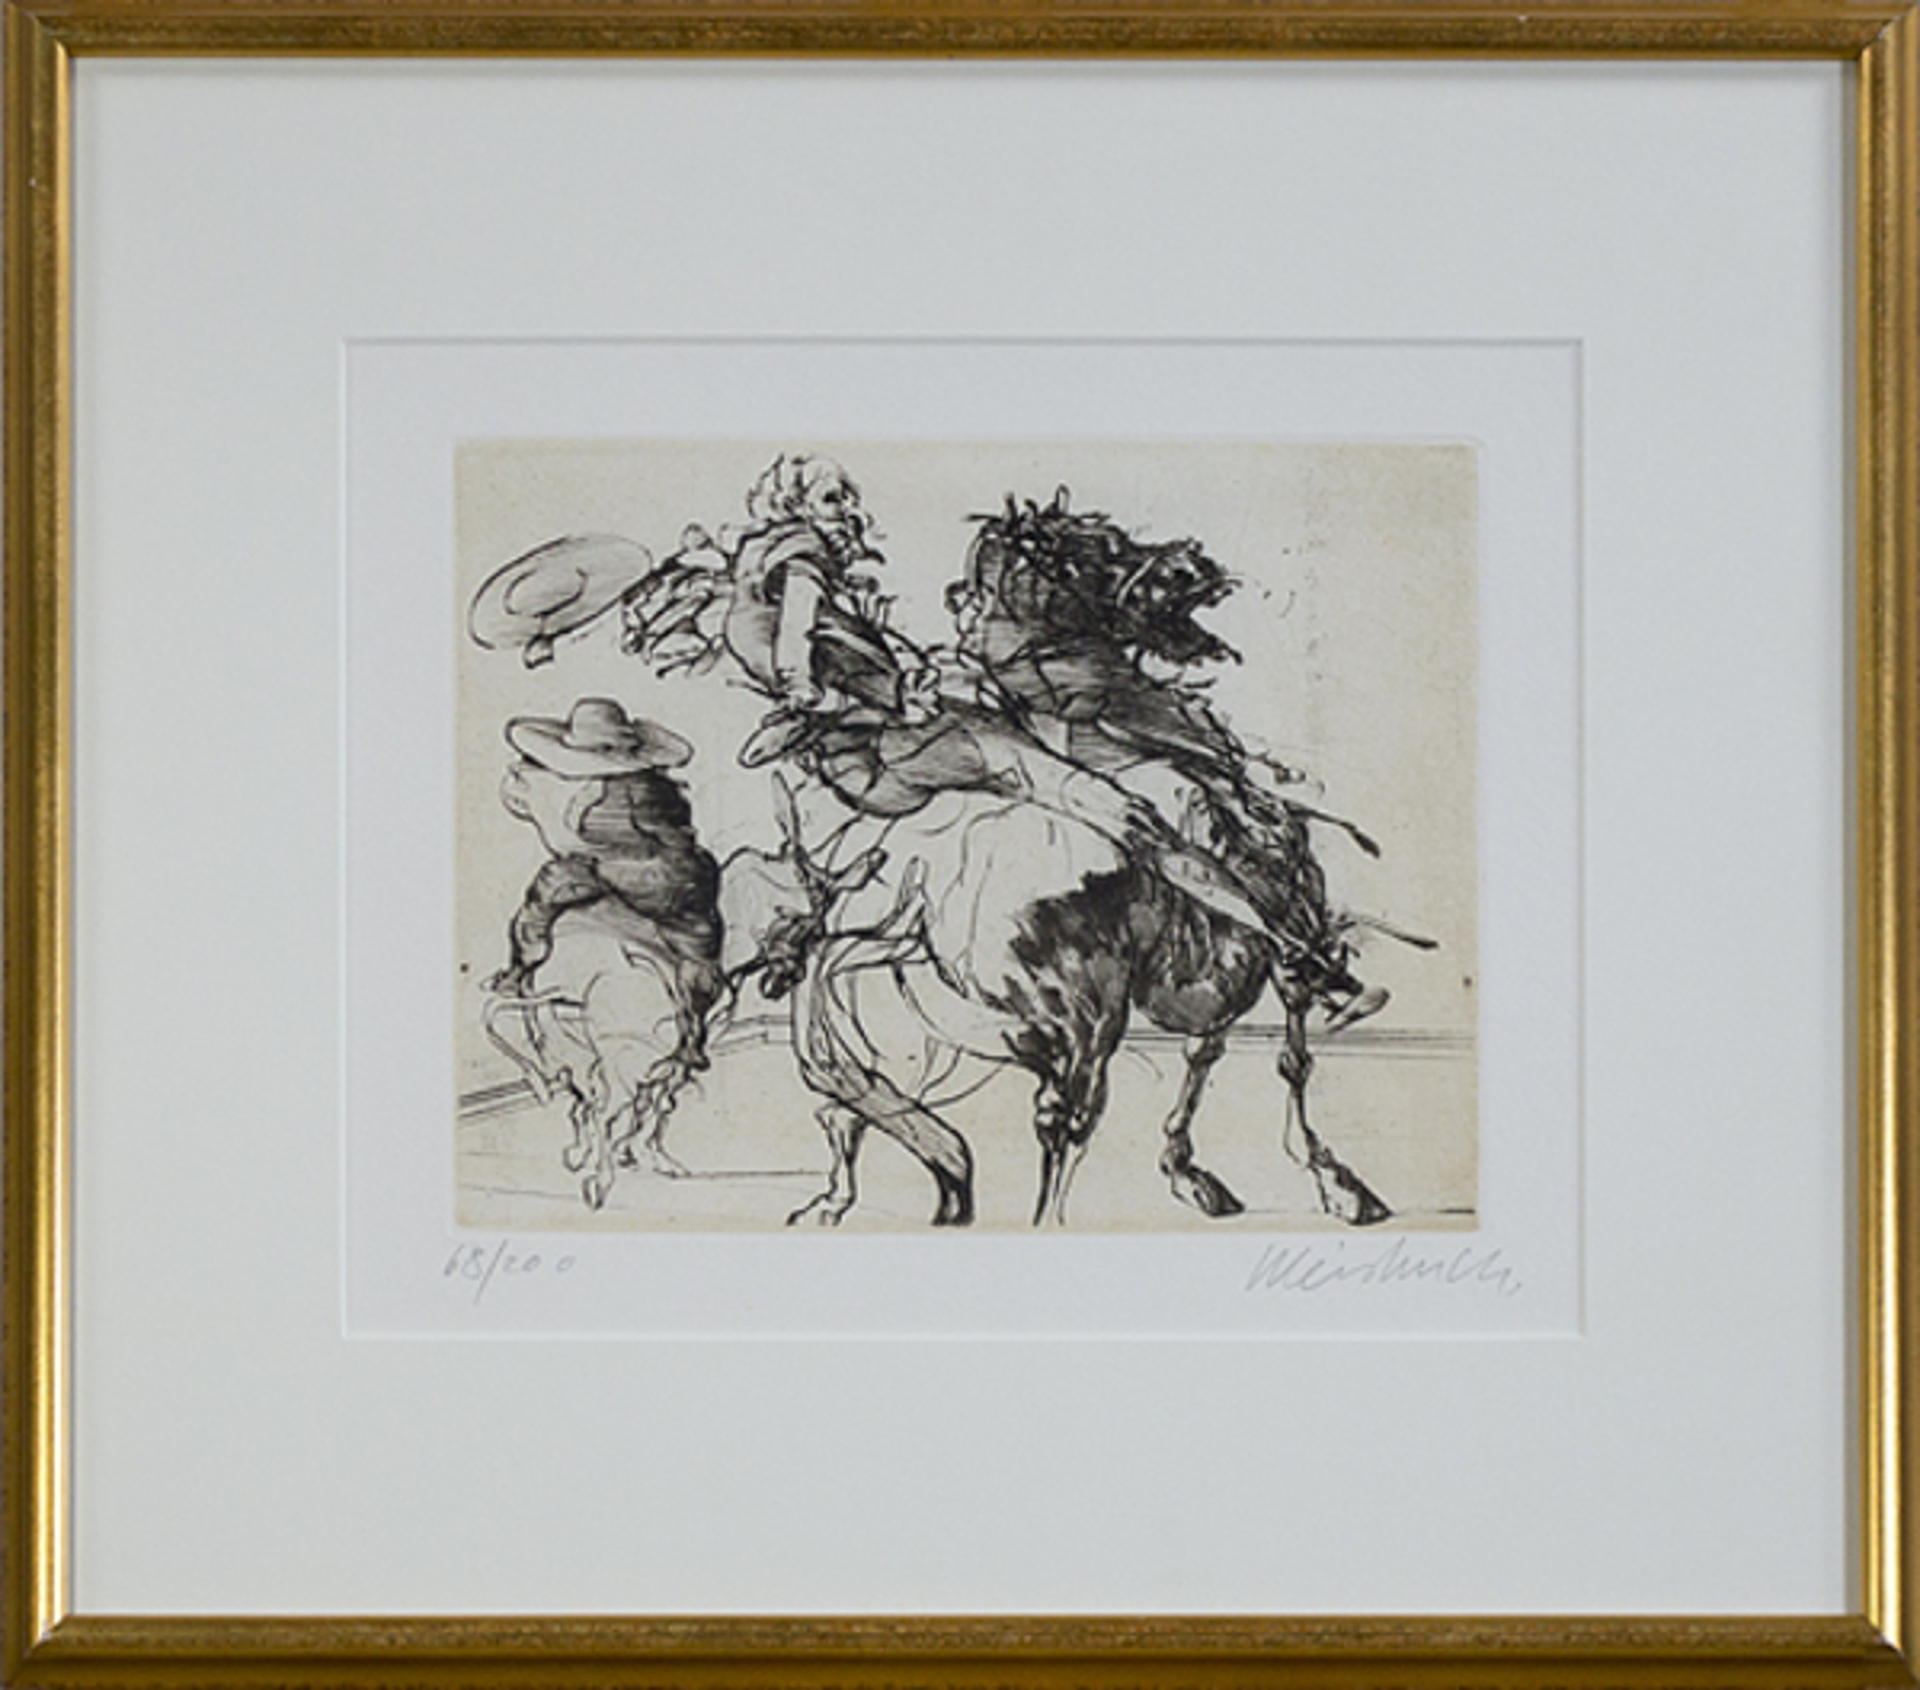 Don Quichotte De La Manche-Quichotte & Sancho Panza on Horseback-Don Q. Falling by Claude Weisbuch